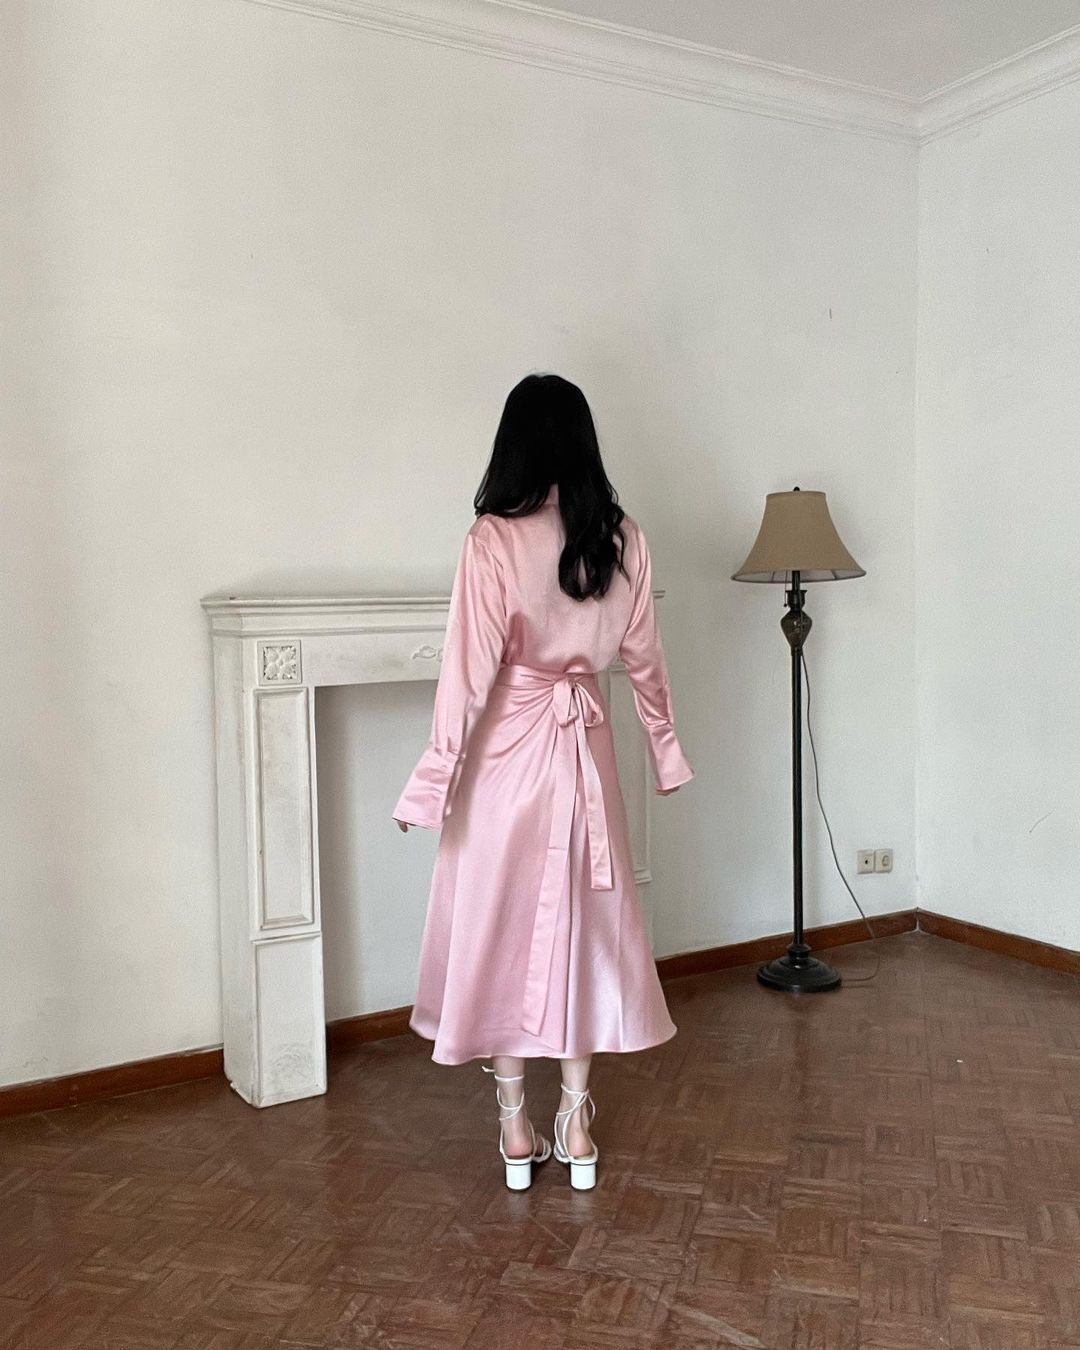 一個留著黑色長髮、穿著粉紅色芭蕾長裹身裙和白色高跟鞋的人站在一間裝飾簡約的房間裡，面對著壁爐。